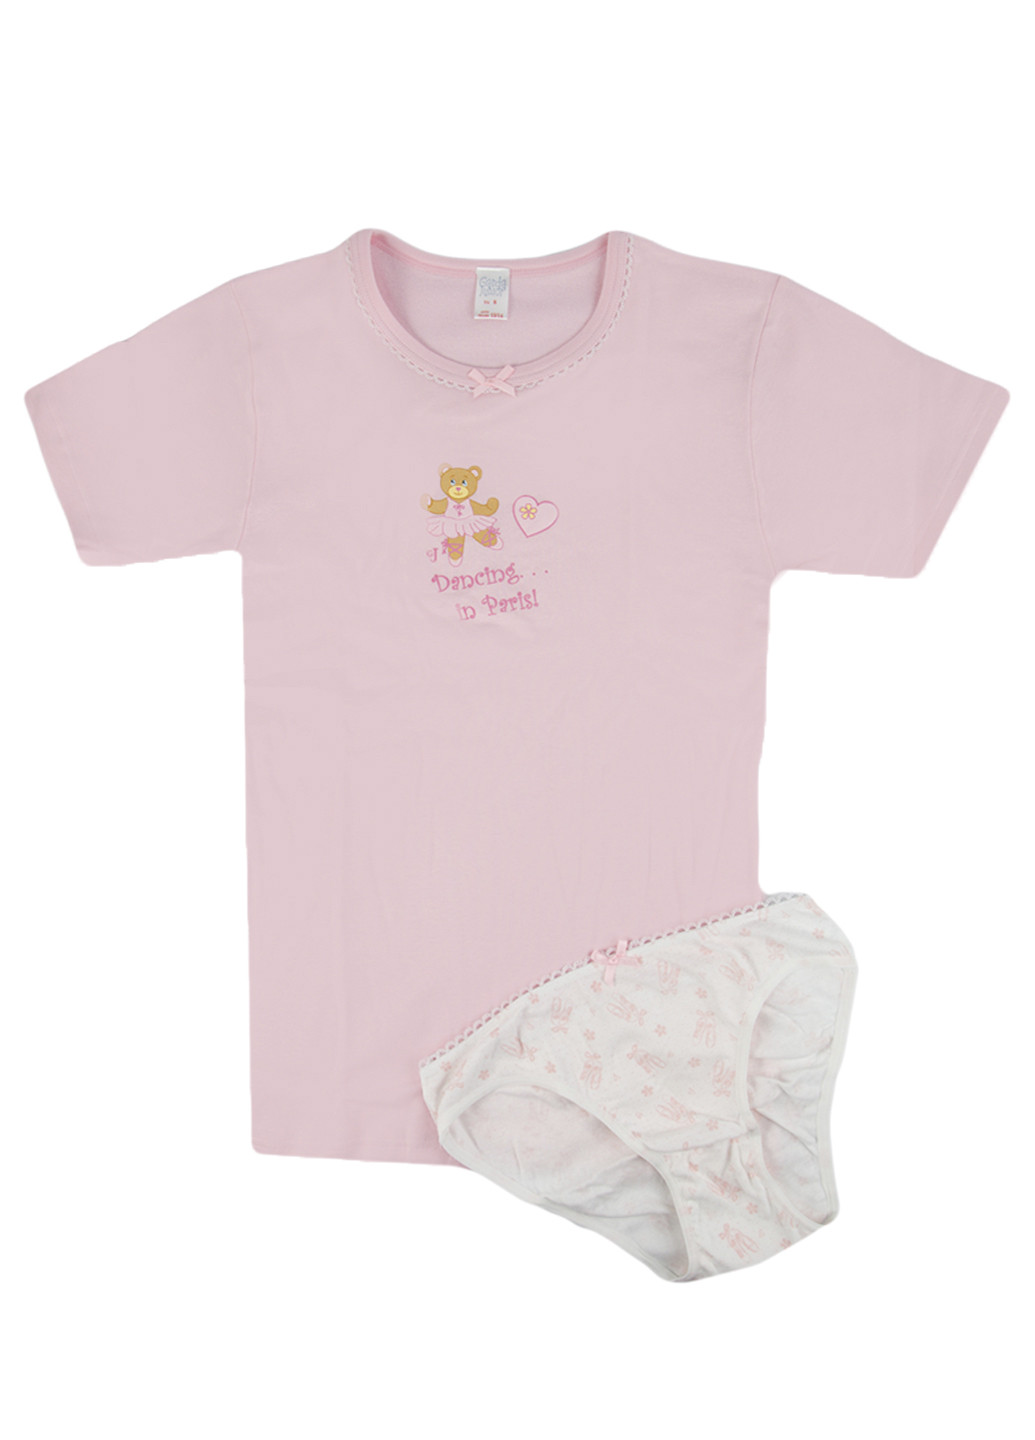 Бледно-розовый демисезонный комплект (футболка, трусики) Garda Junior